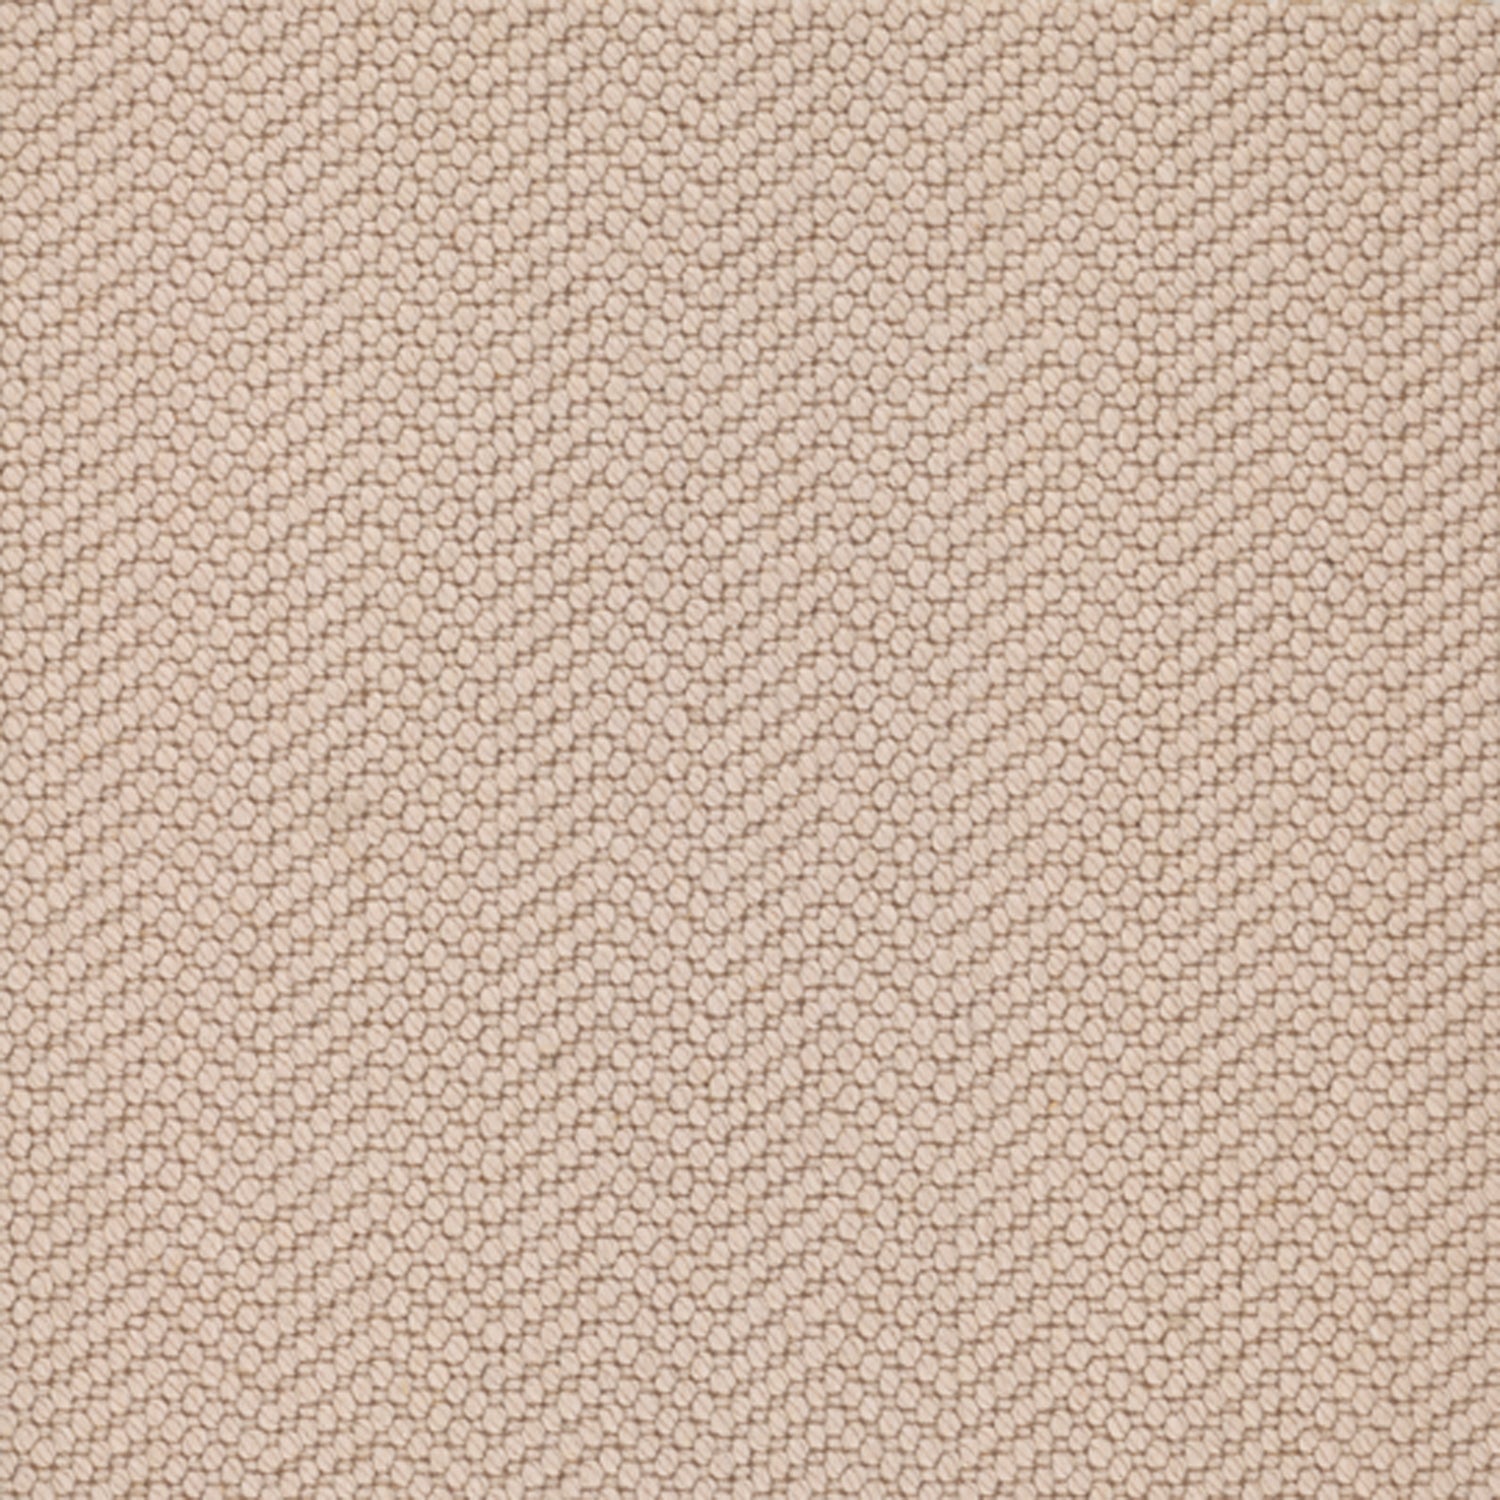 Wool broadloom carpet swatch in a dimensional herringbone weave in beige.